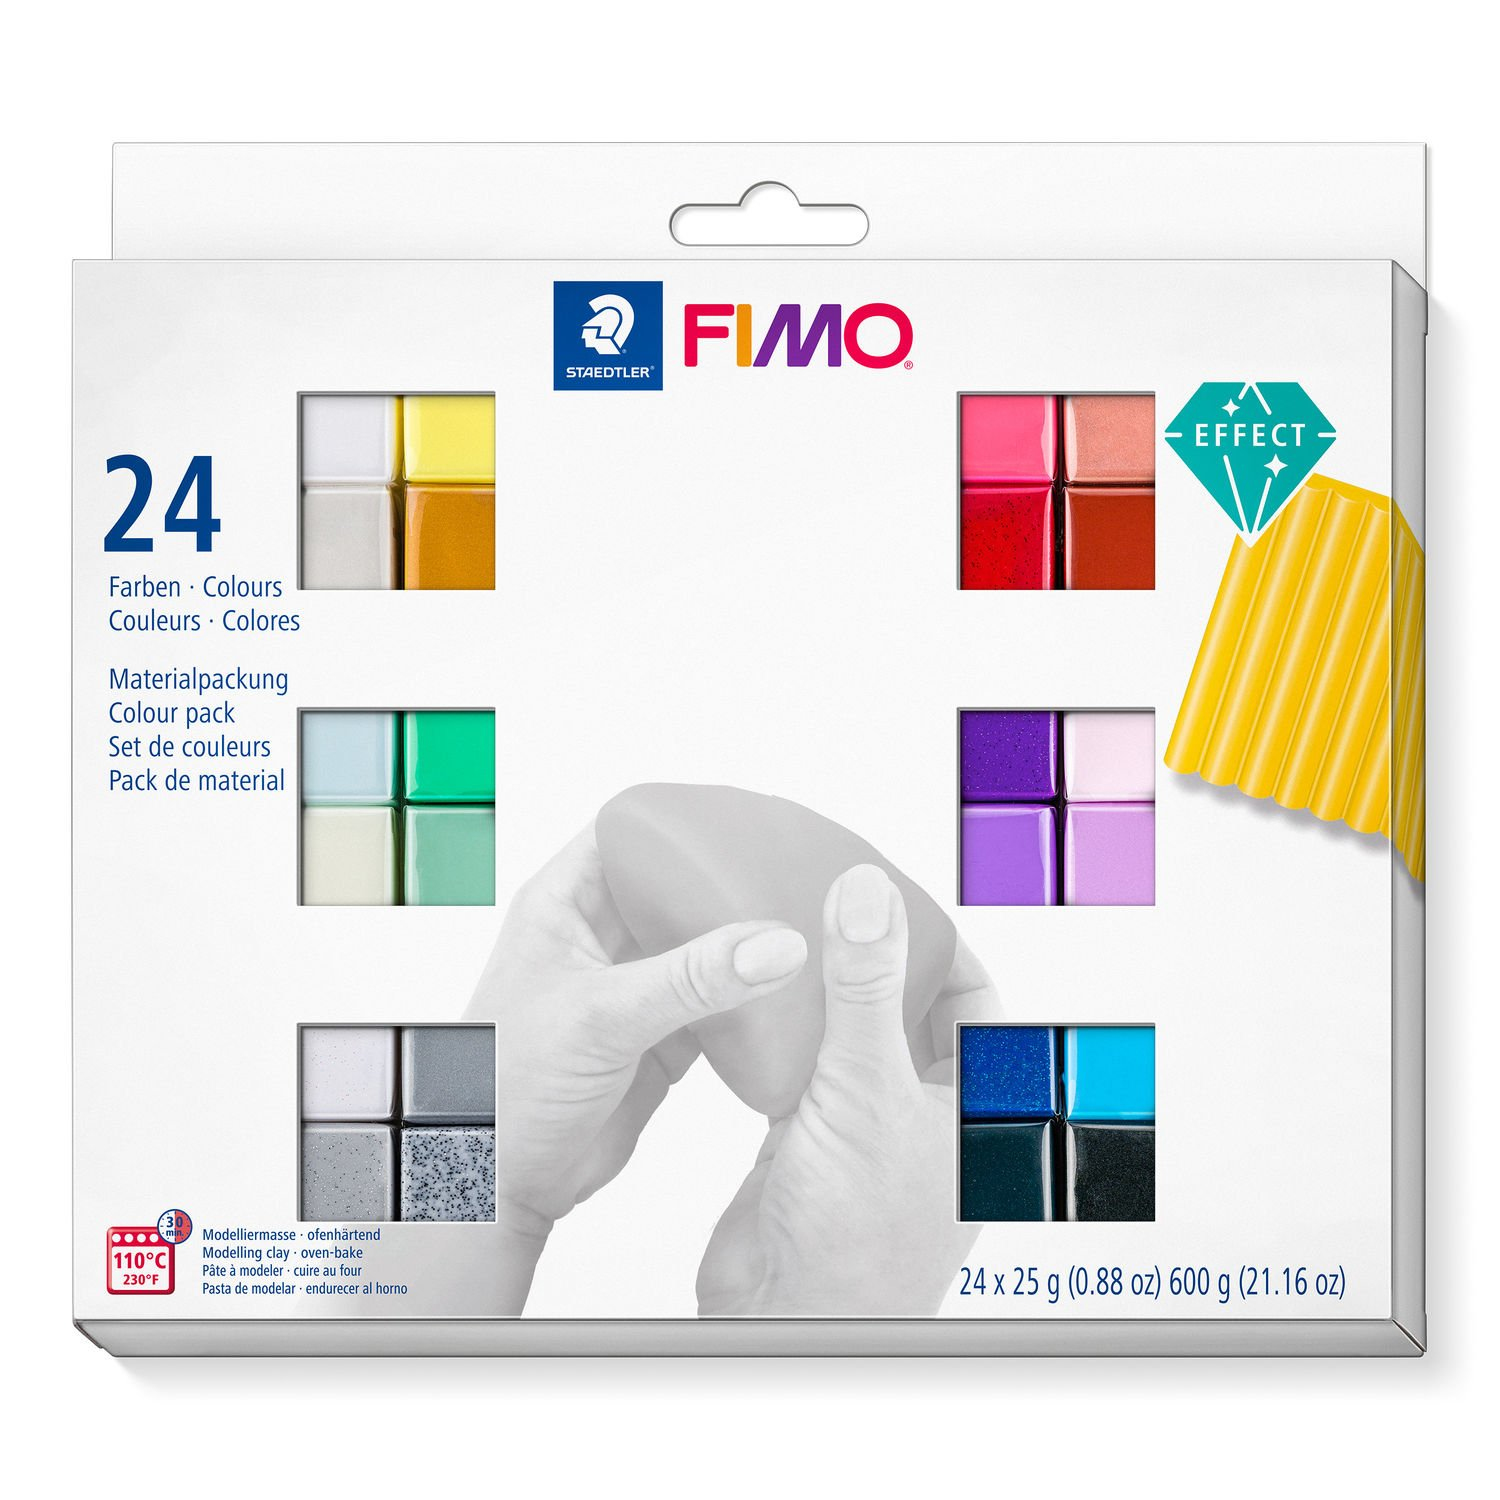 STAEDTLER FIMO 8013 C - Modellierton - Schwarz - Blau - Kupfer - Gold - Grün - Grau - Perleffekt - Pink - Violett - Rot - Rose - Silber - Weiß - Gelb - 24 Stück(e) - 24 Farben - 110 °C - 30 min